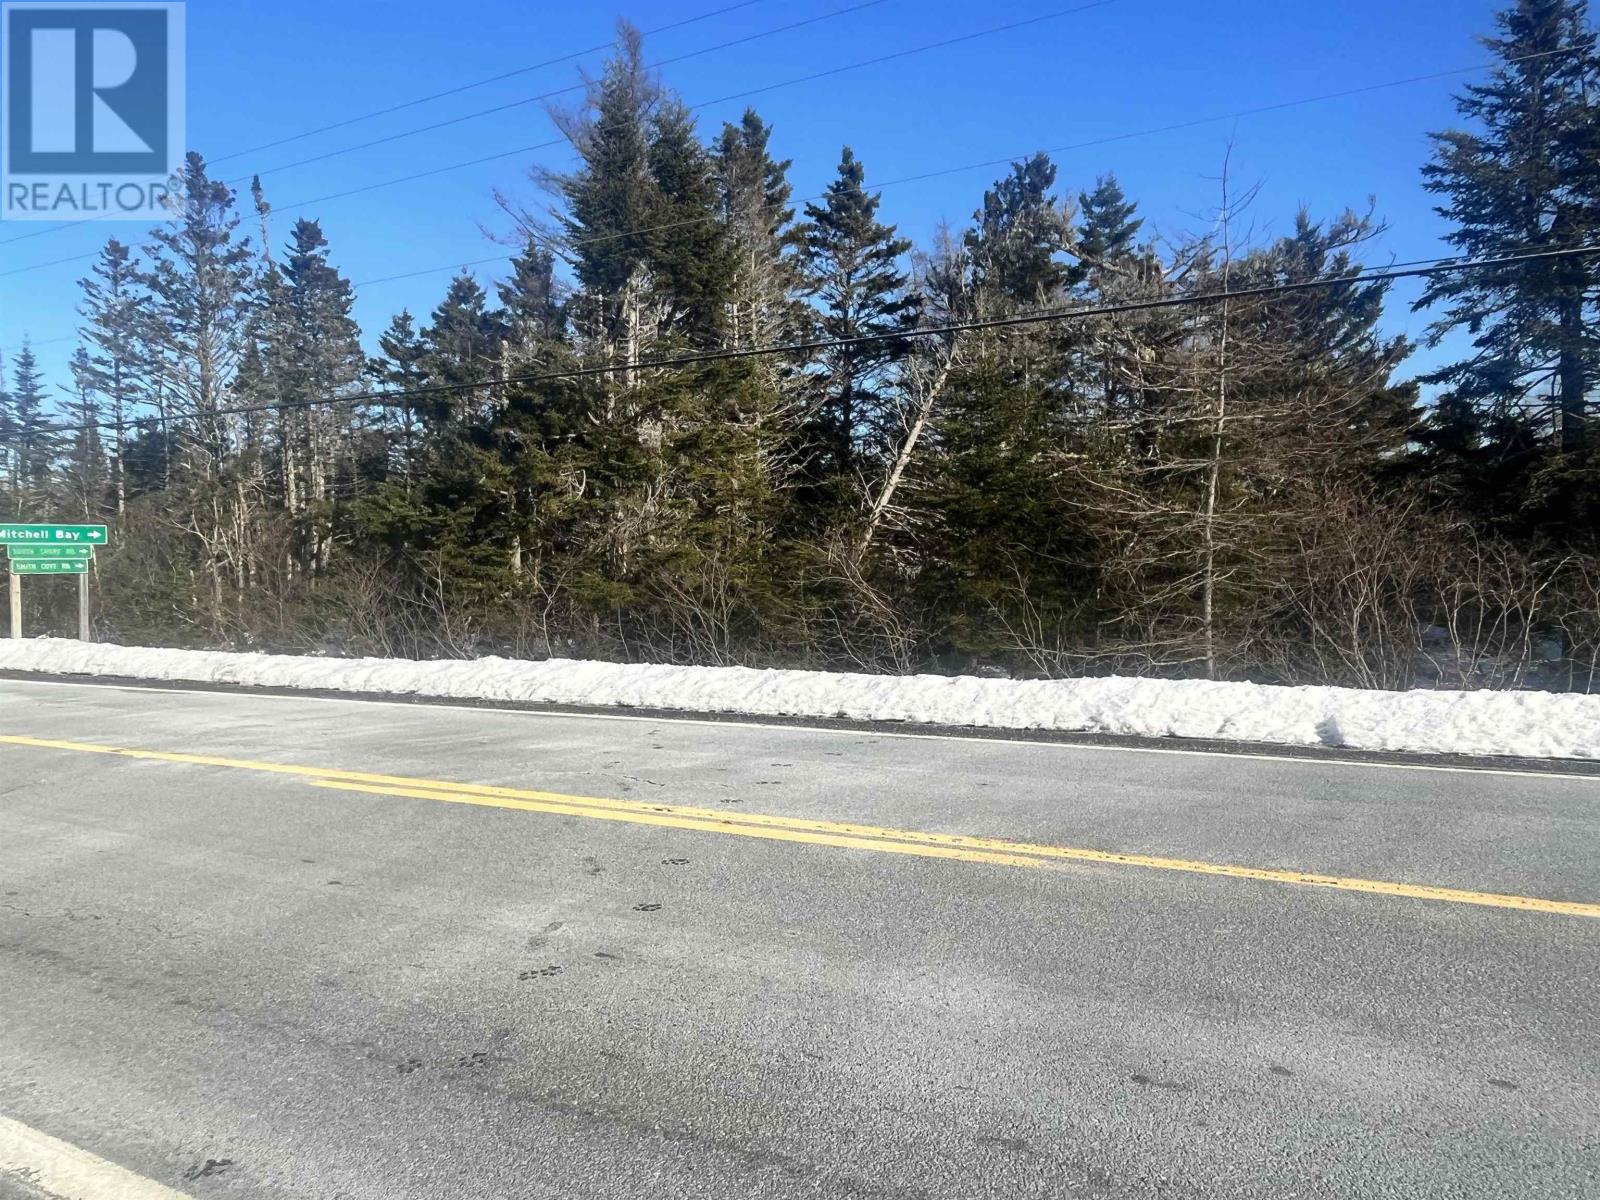 Highway 7 located in Necum Teuch, Nova Scotia